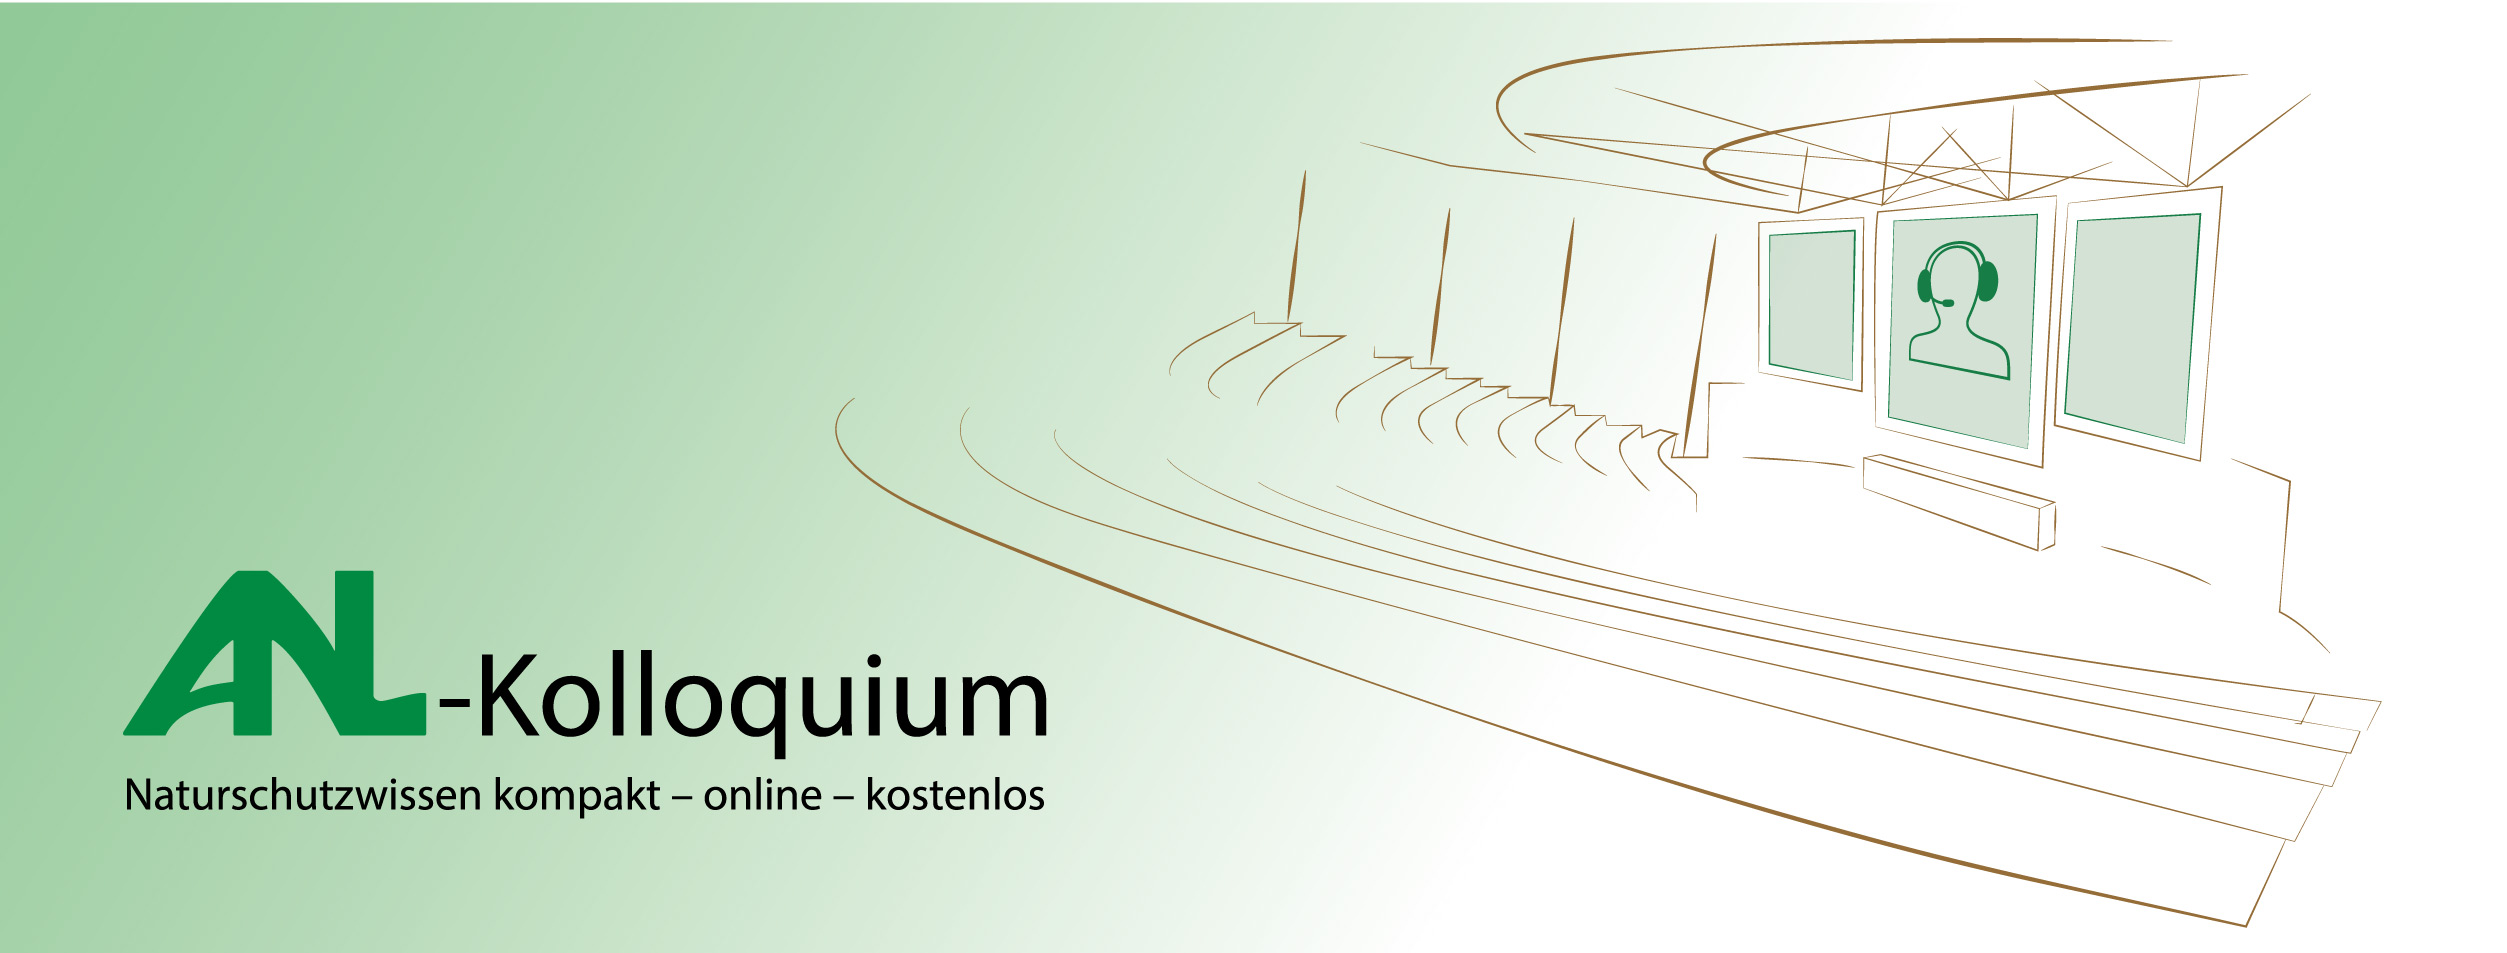 ANL-Kolloquium - Naturschutzwissen kompakt - online - kostenlos. Zeichnung eines Hörsaals mit stilisiertem, Kopfhörertragendem Kopf auf einem großen Bildschirm in der Mitte.